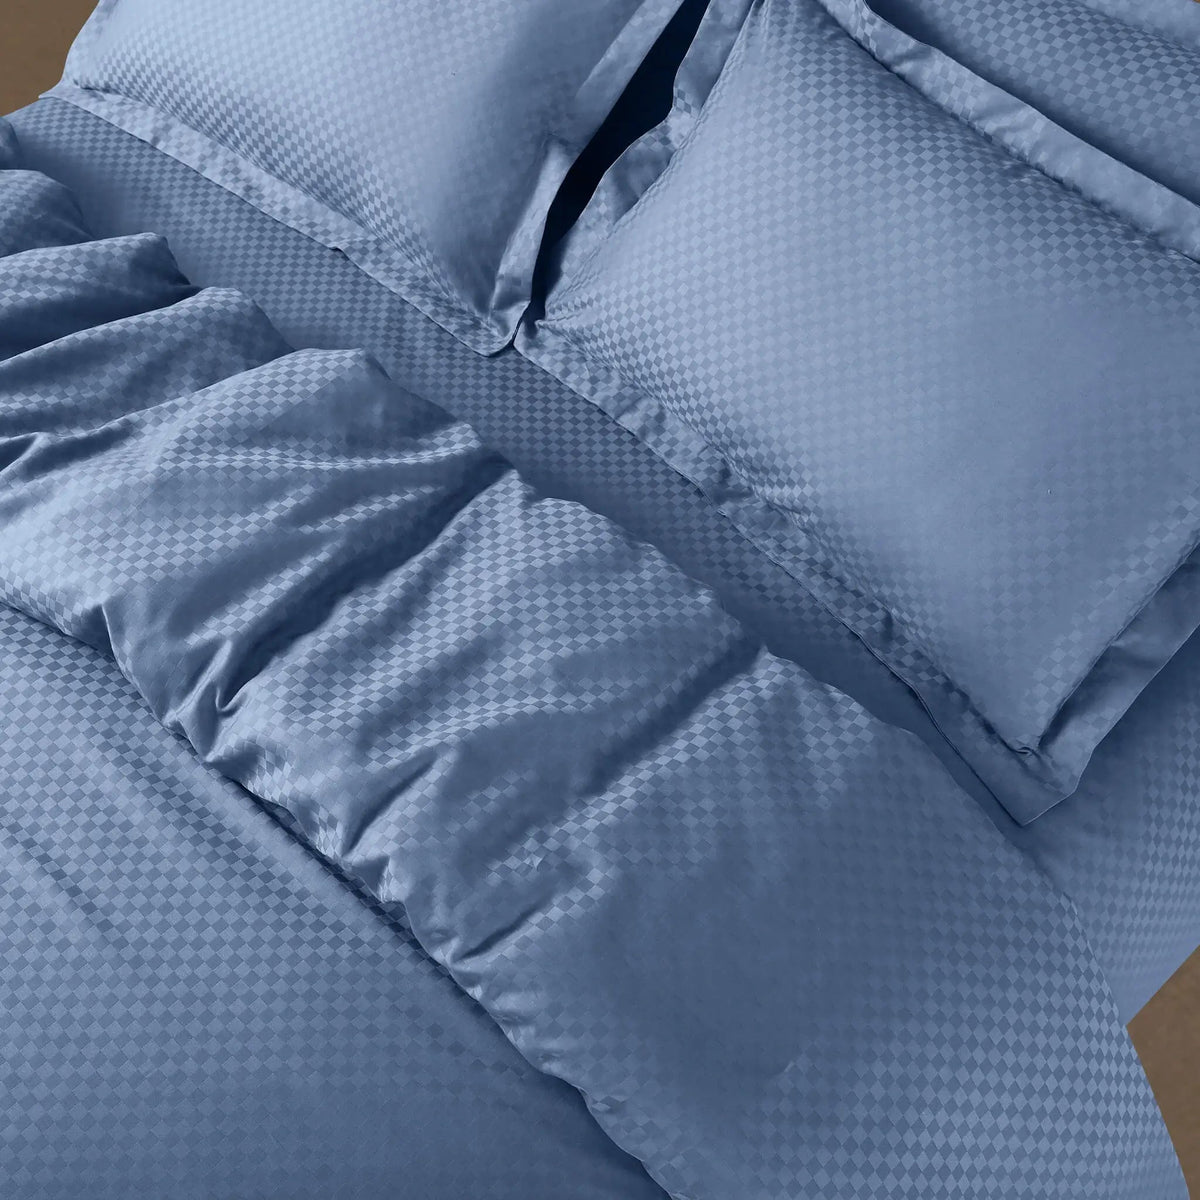 Malako Lyon Jacquard Blue Checks 450 TC 100% Cotton King Size Bed Sheet - MALAKO